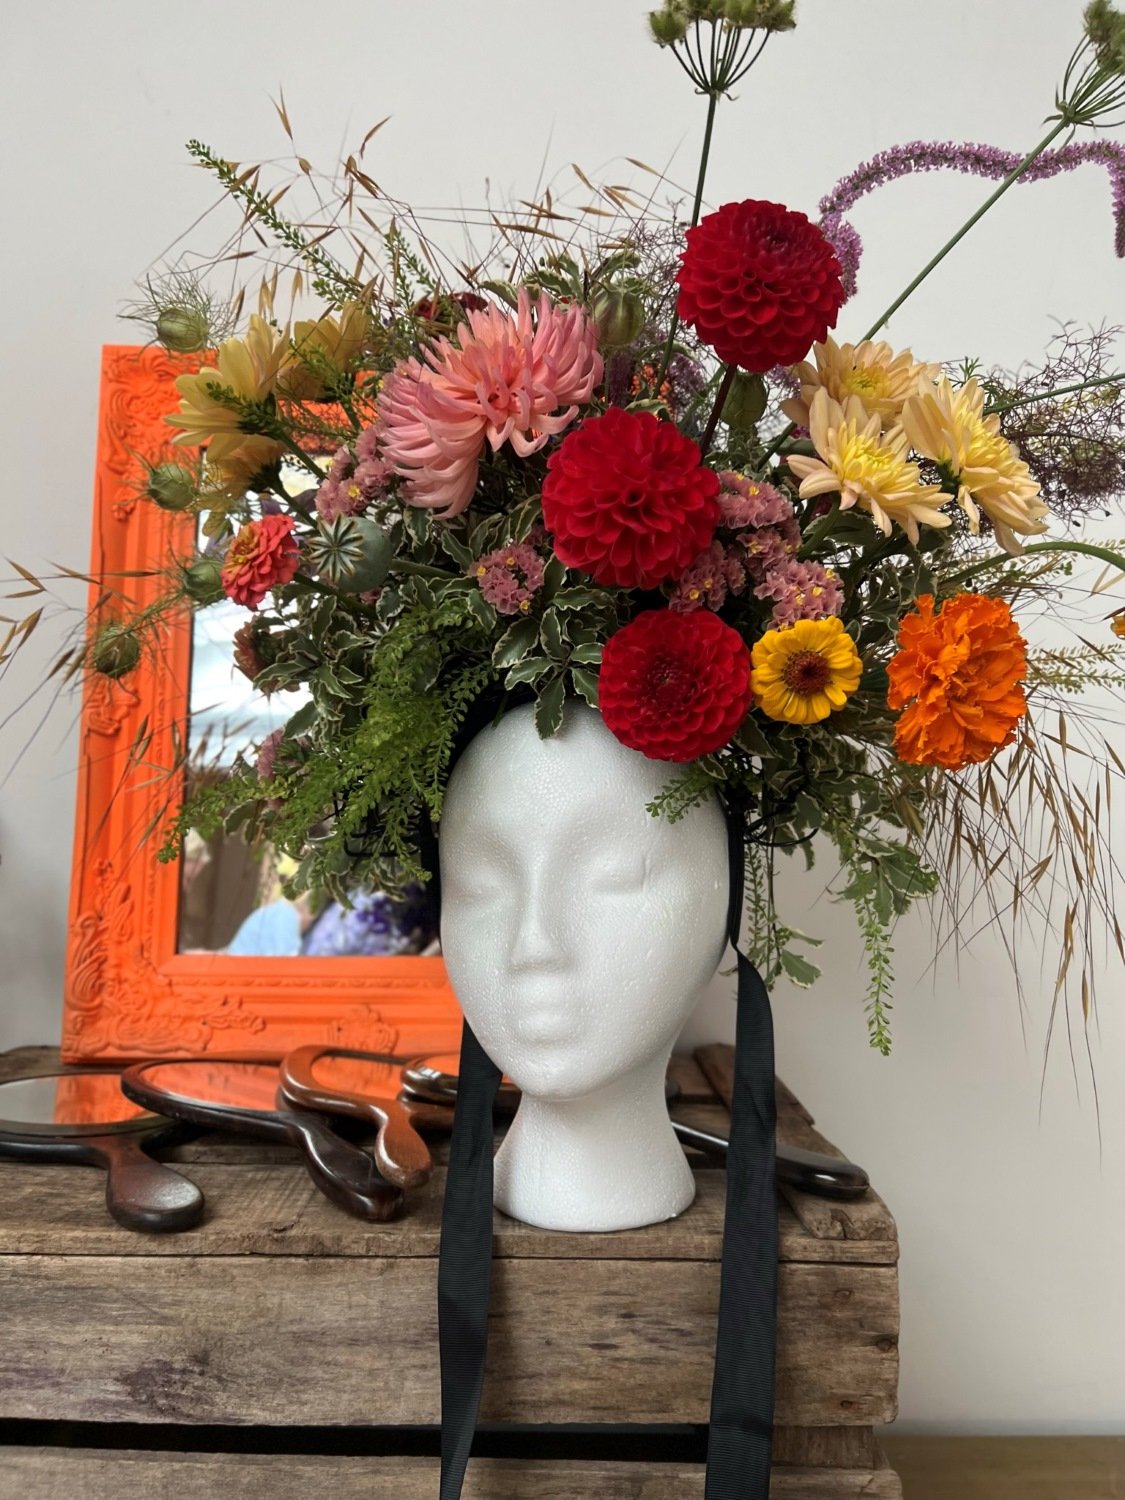 Brightly coloured British flower crown against fluro orange mirror